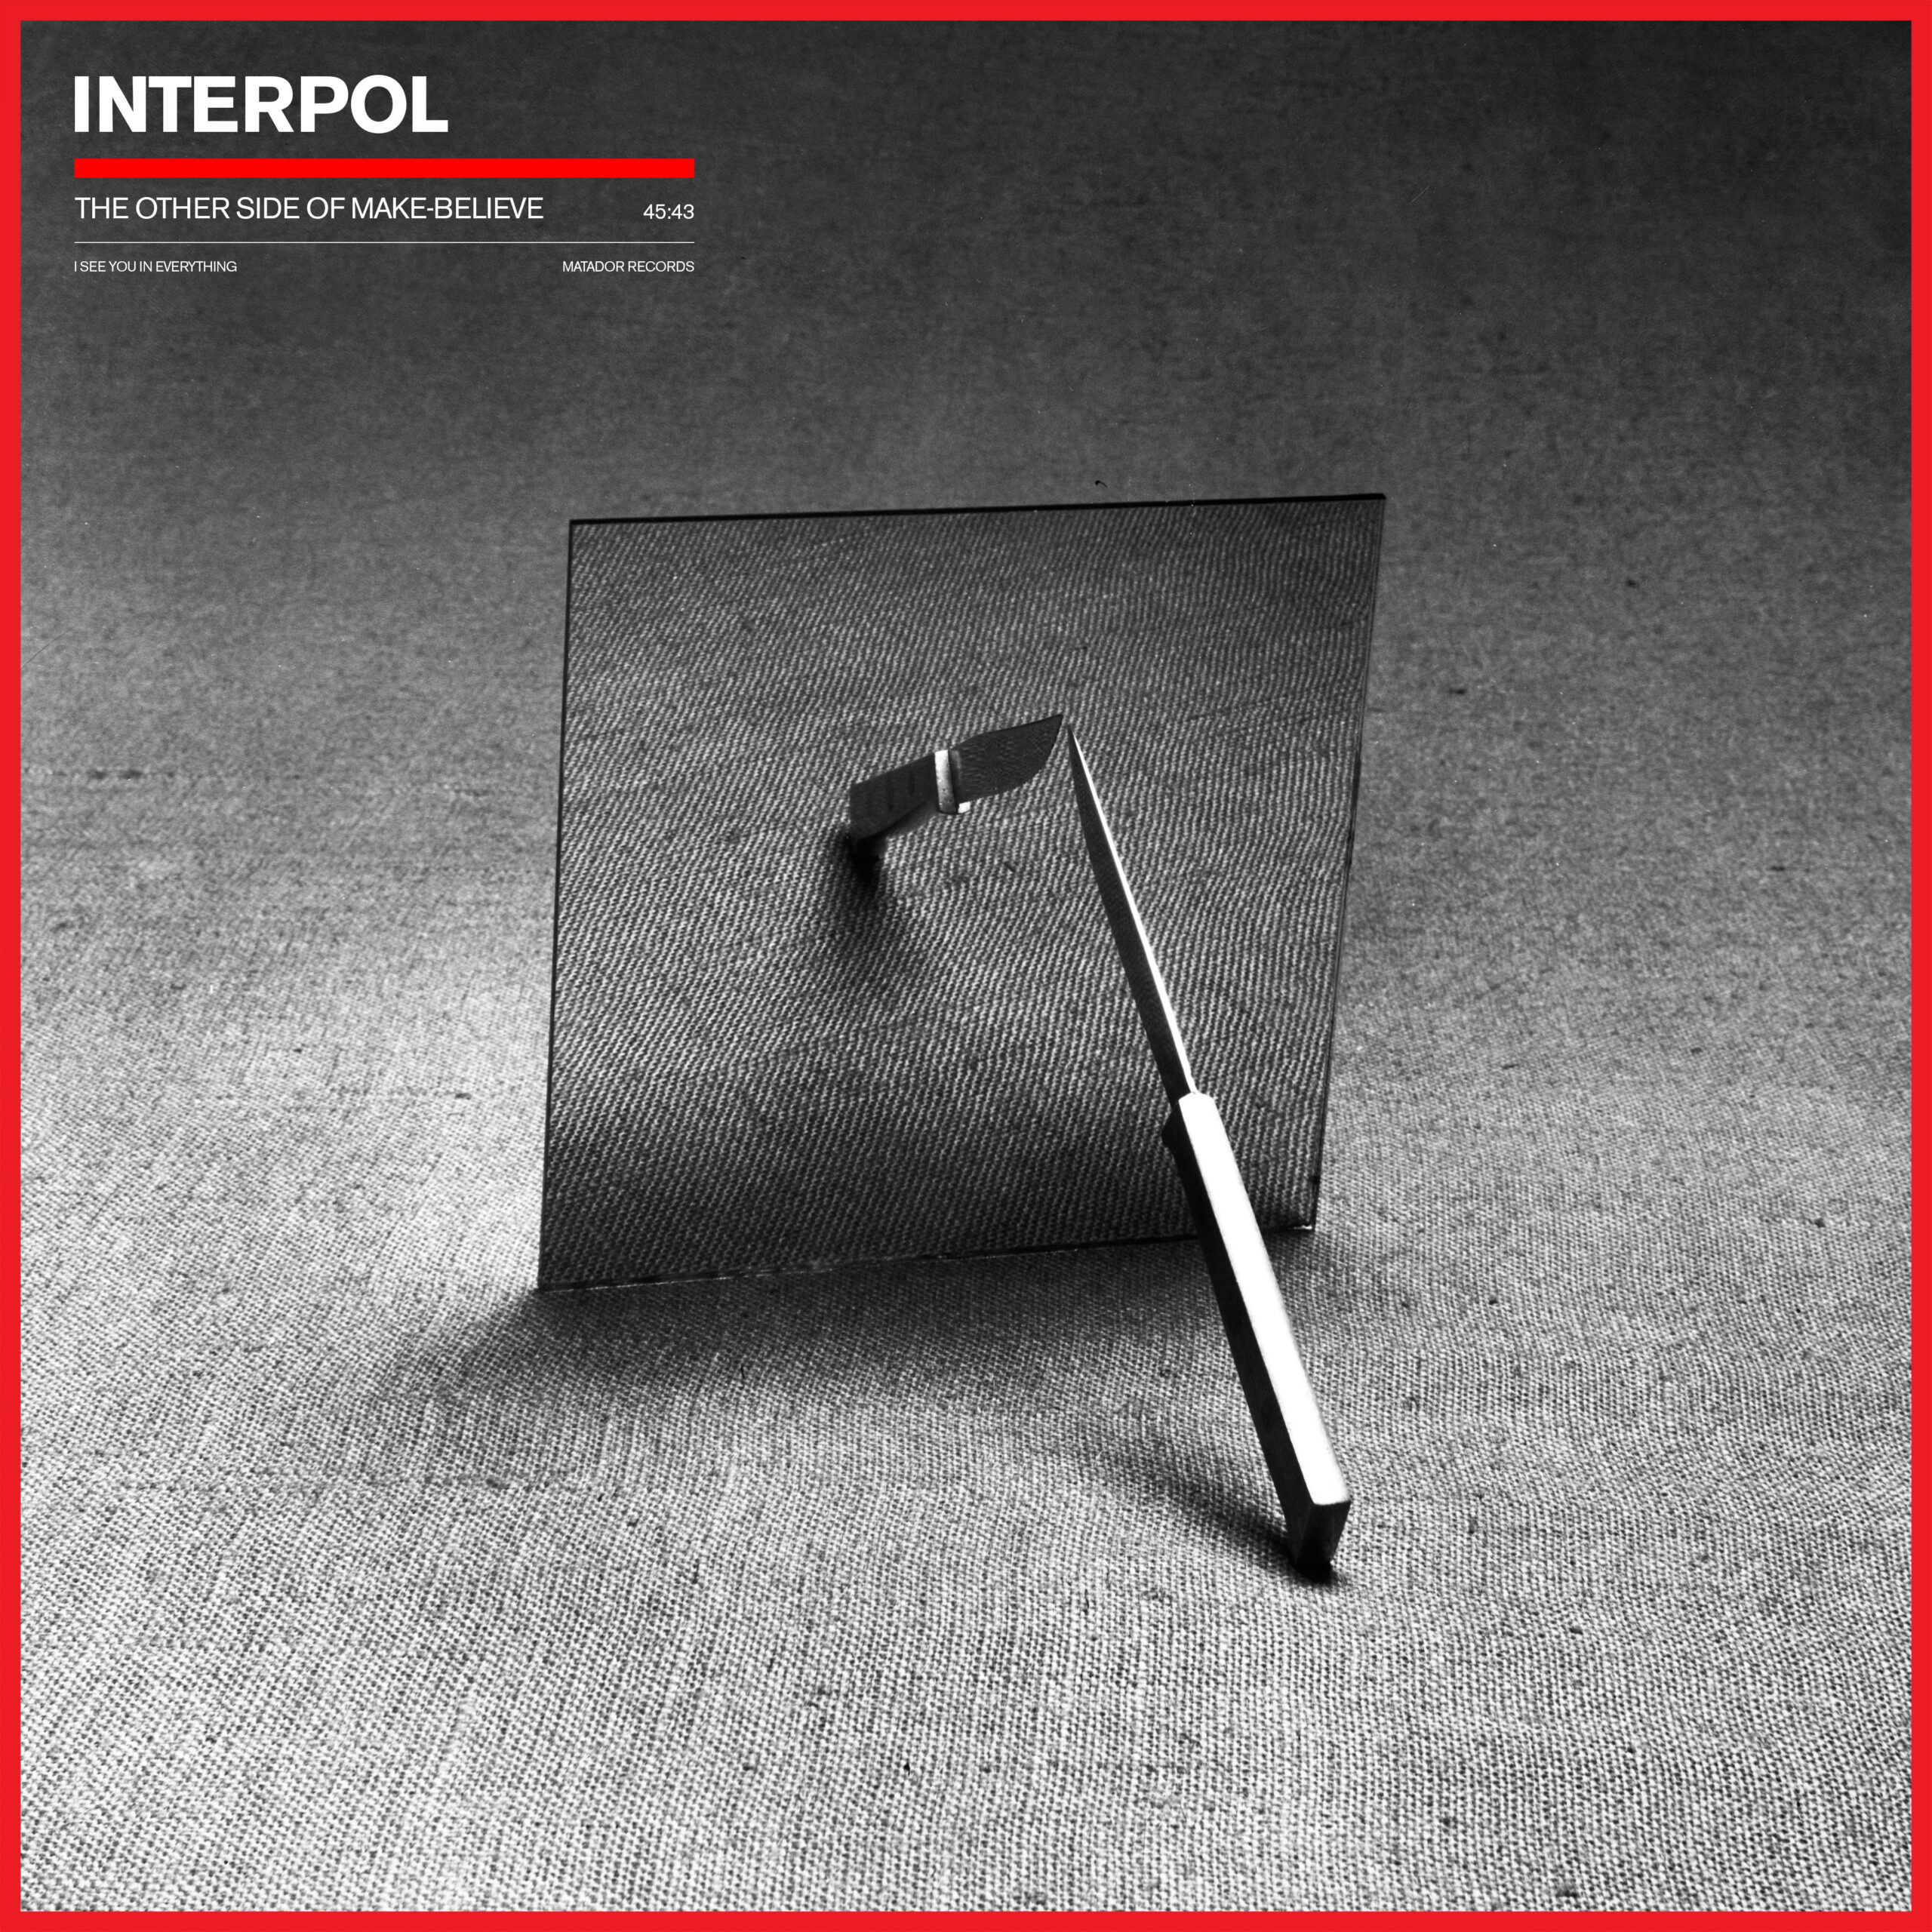 SpazioRock Interpol New album cover